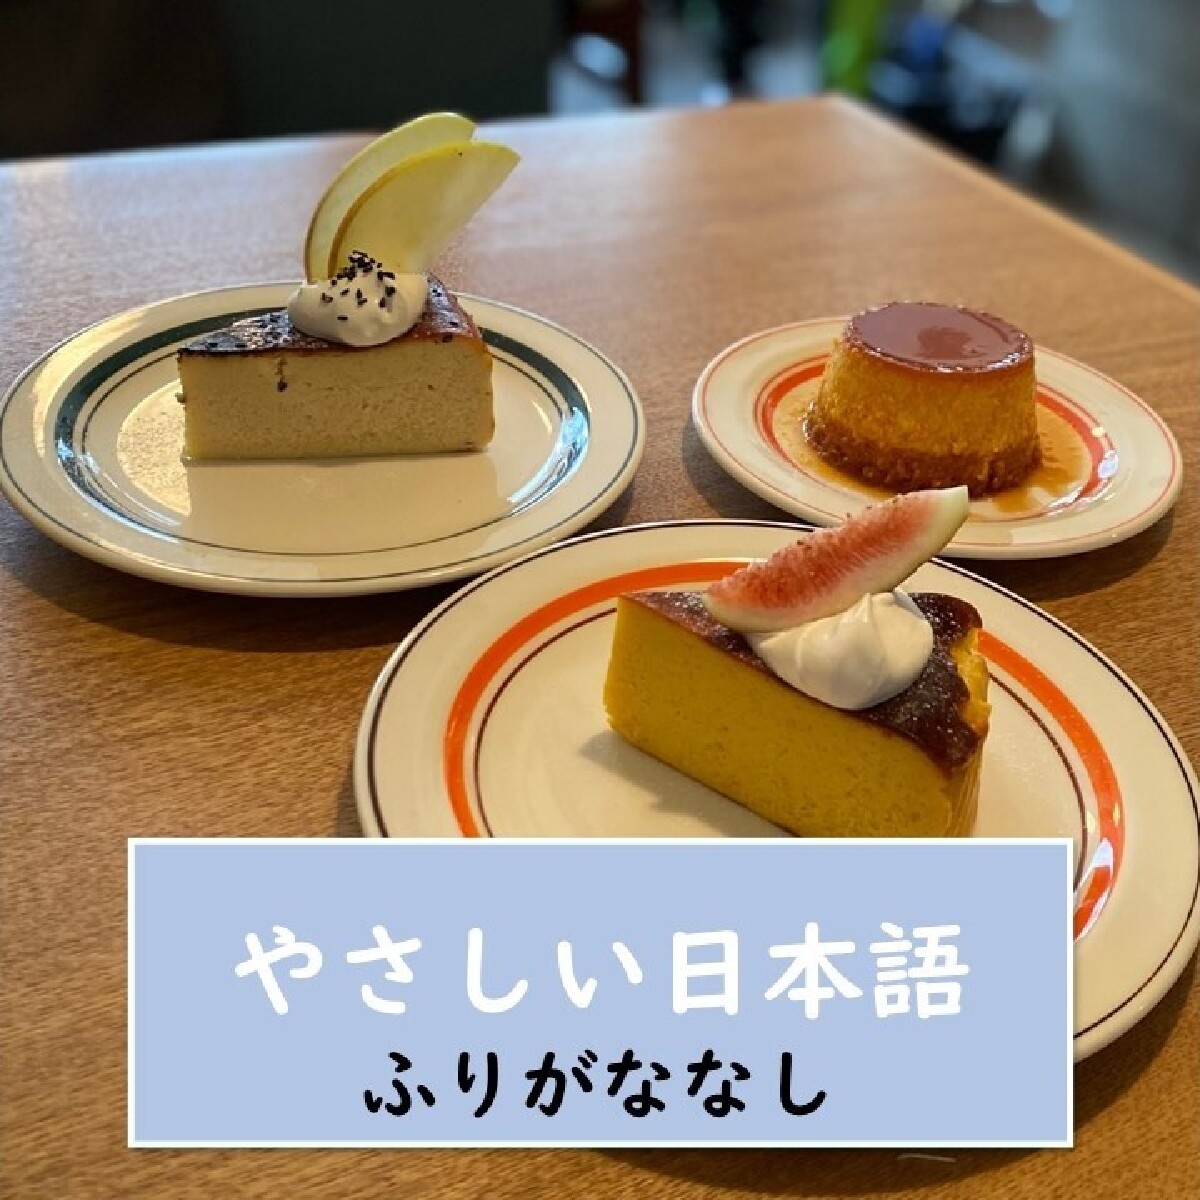 【東京・新宿・カフェ】 芋 栗 かぼちゃの季節が来ました！本当は教えたくありませんが、“隠れ家カフェ*”の秋スイーツを紹介します。【やさしい日本語・ふりがななし】